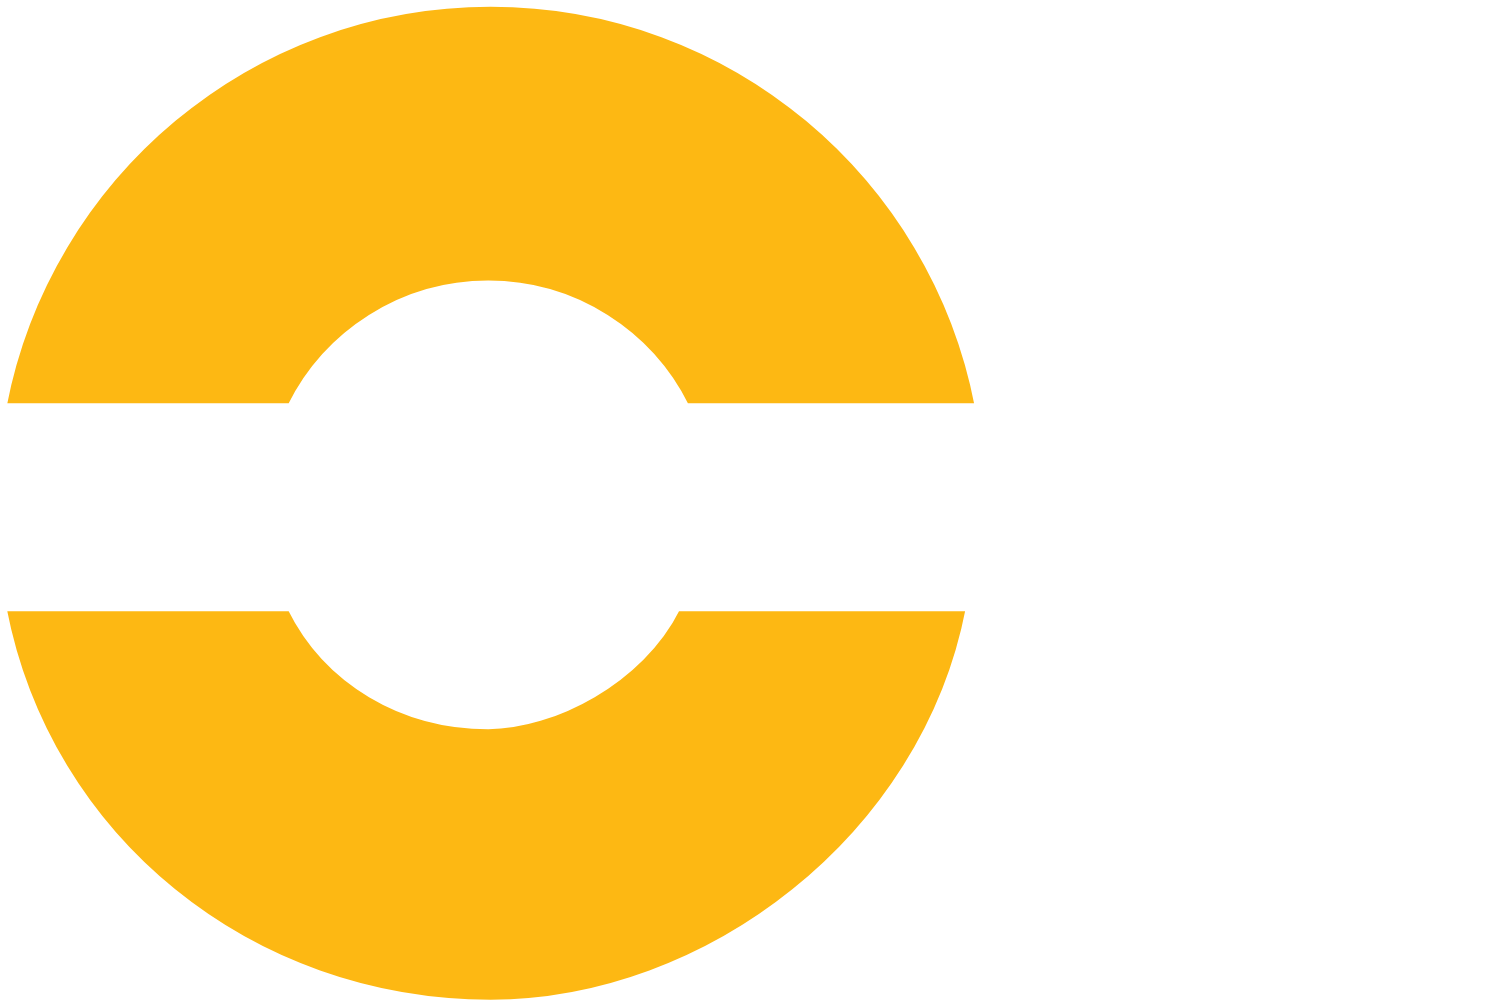 Interroll logo large for dark backgrounds (transparent PNG)